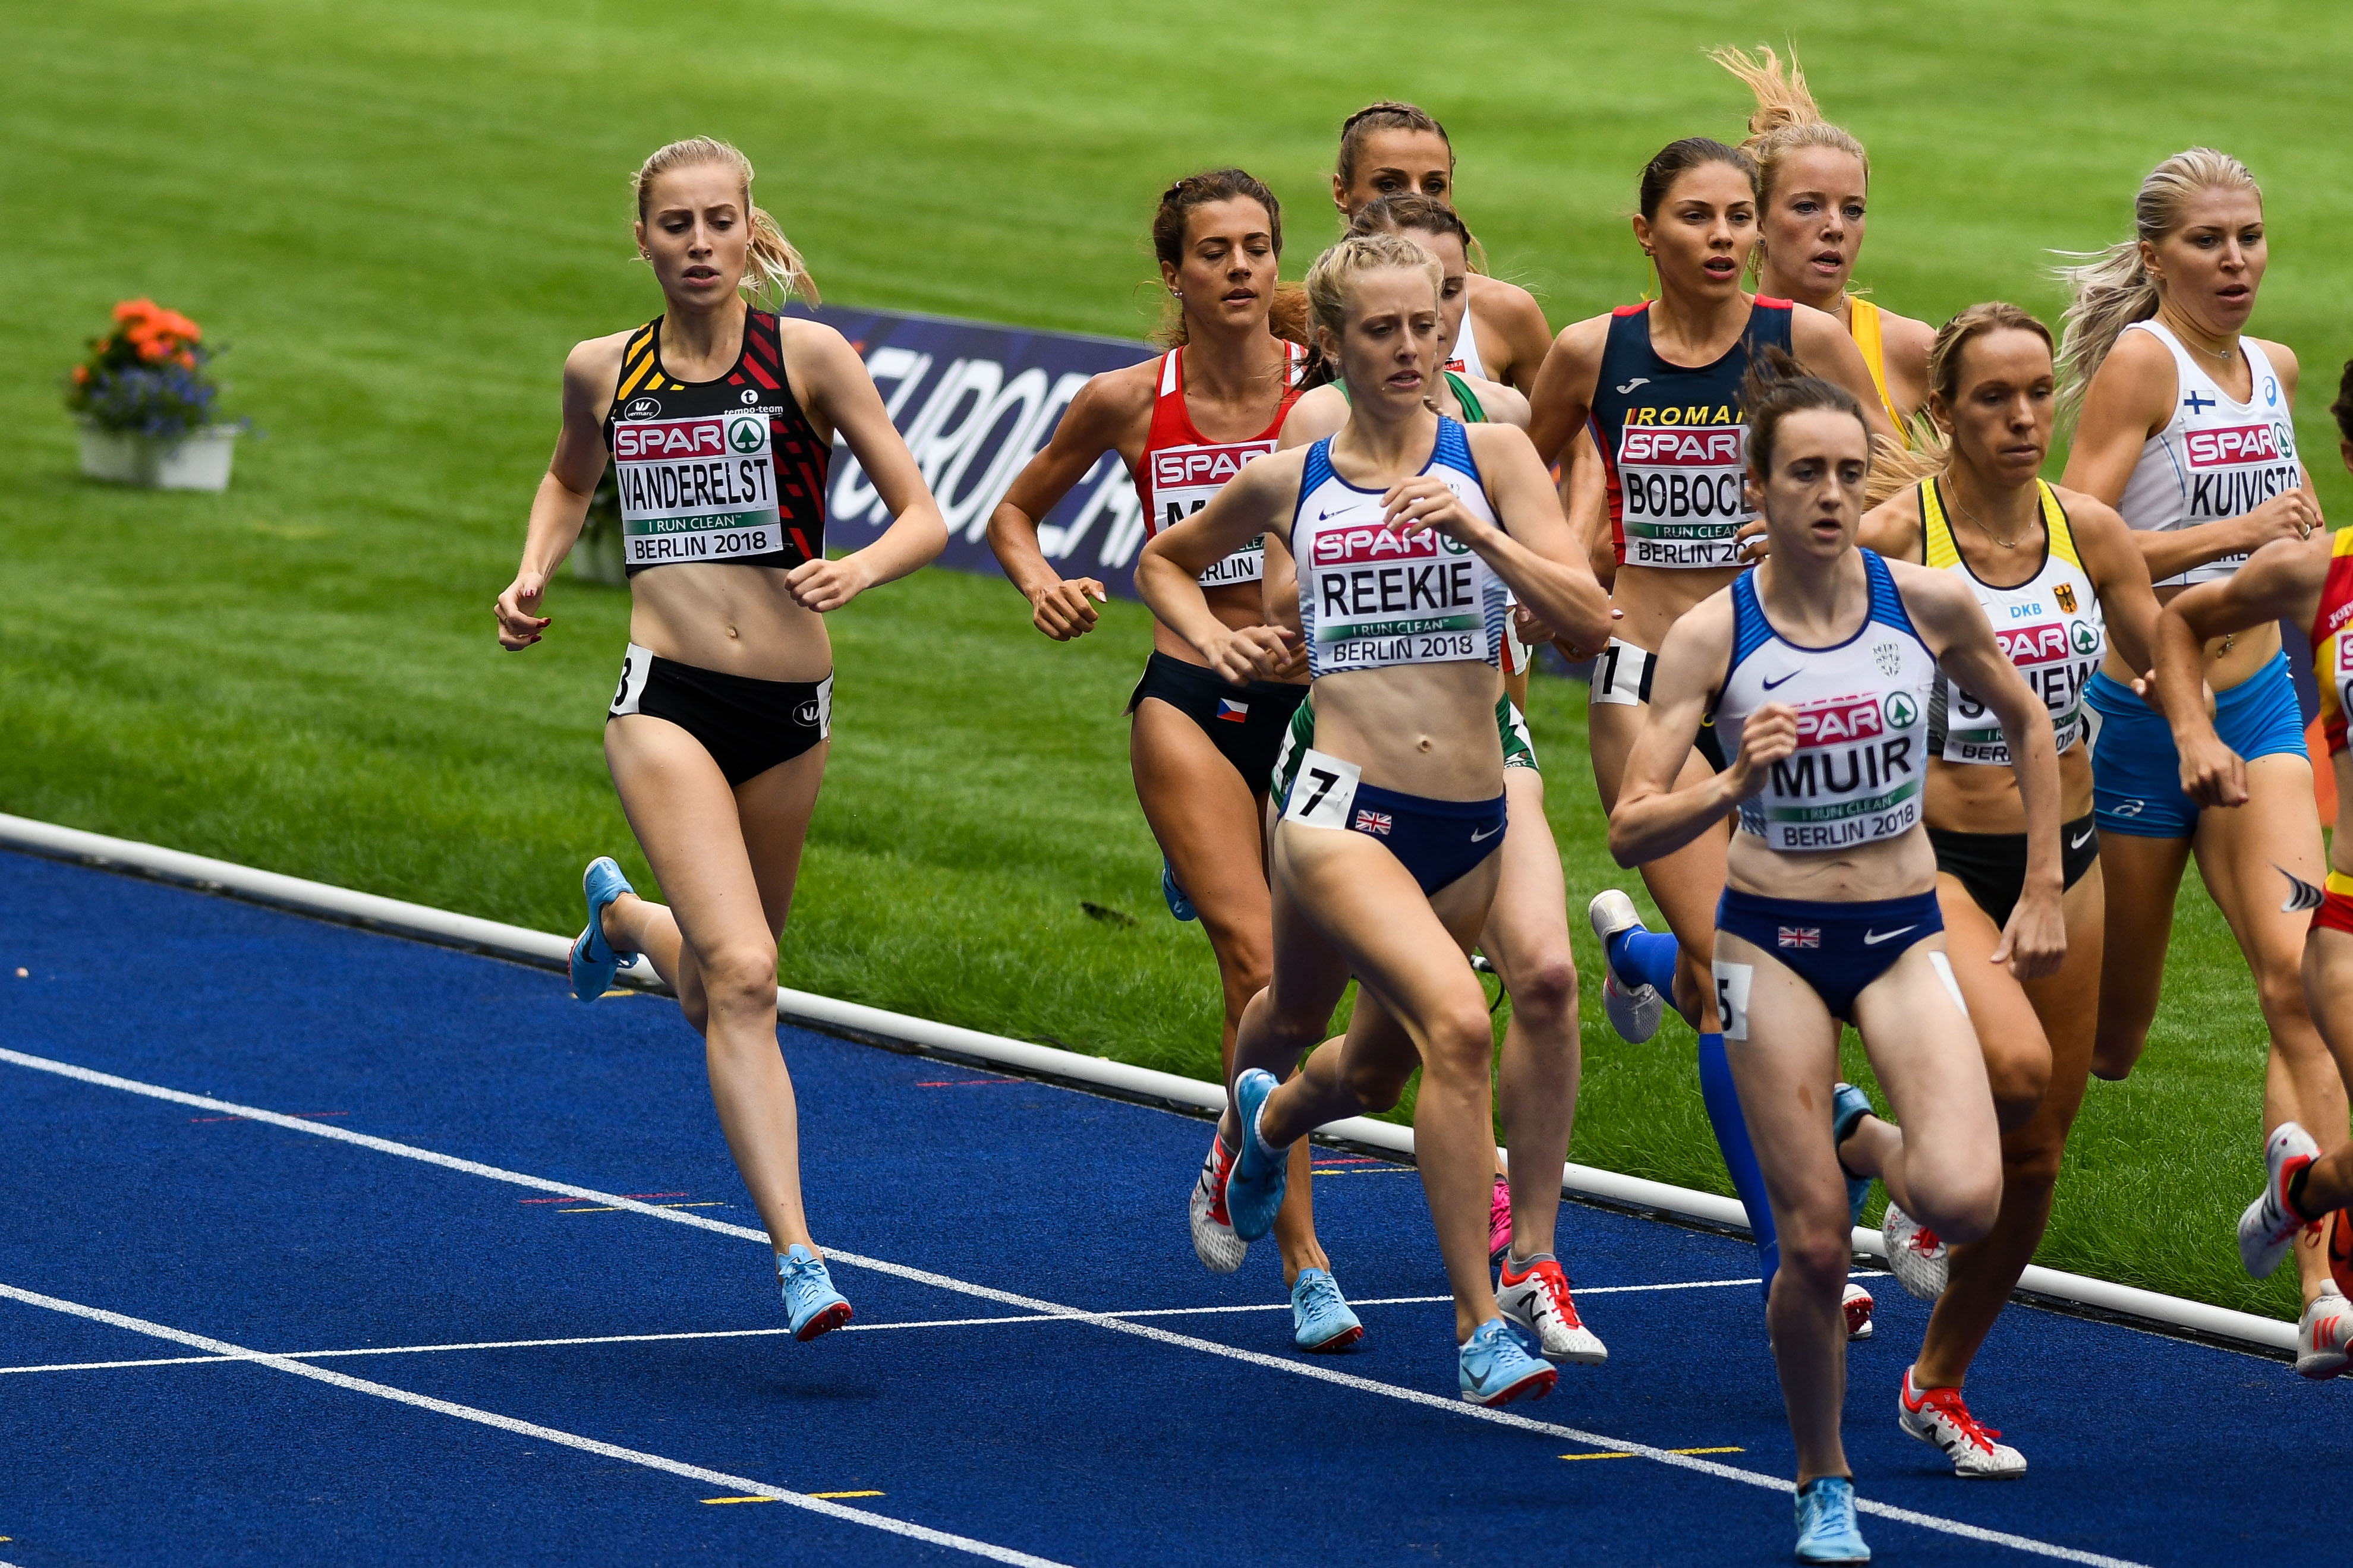 Elise Vanderhelst 1500m Berlijn 2018